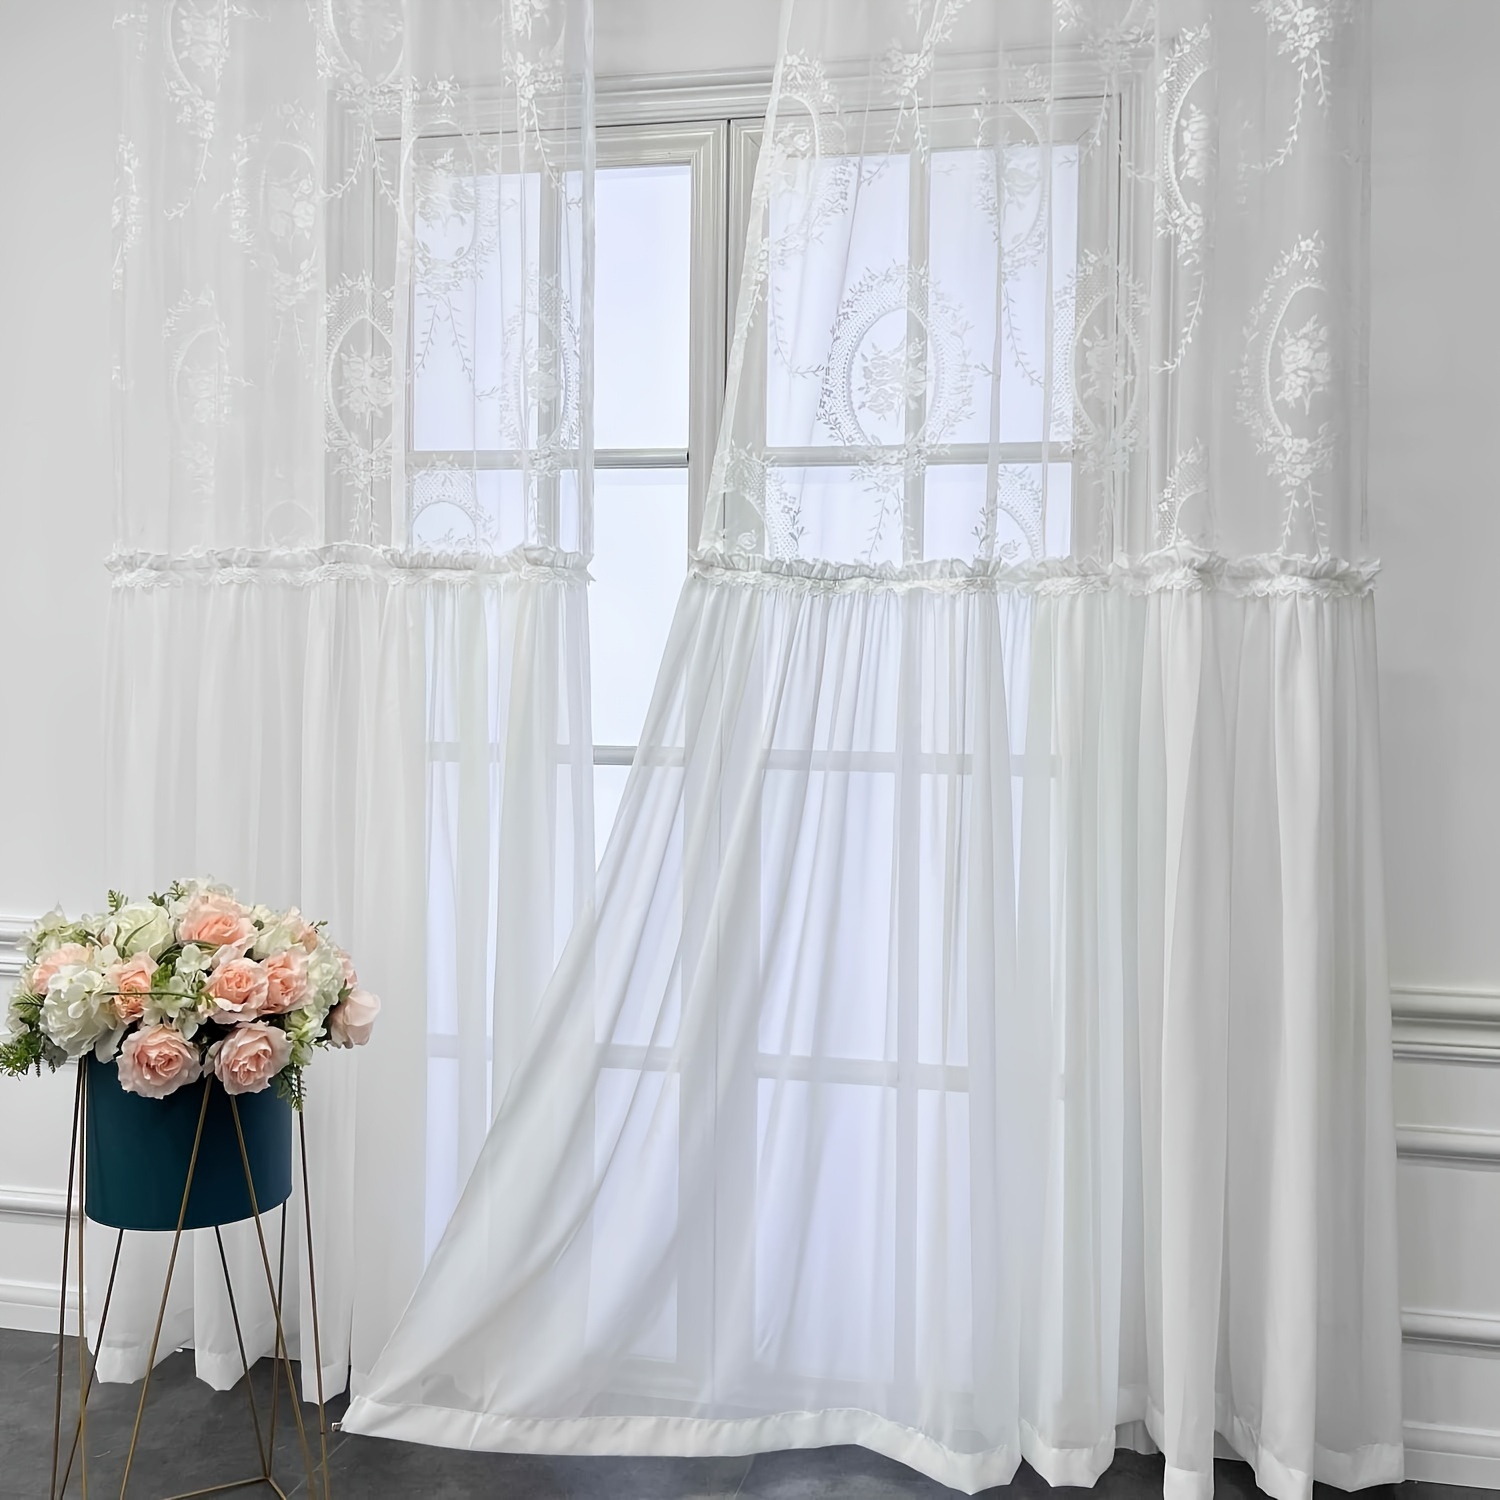 blanco pura cortinas de la ventana visillos cortos para la sala de